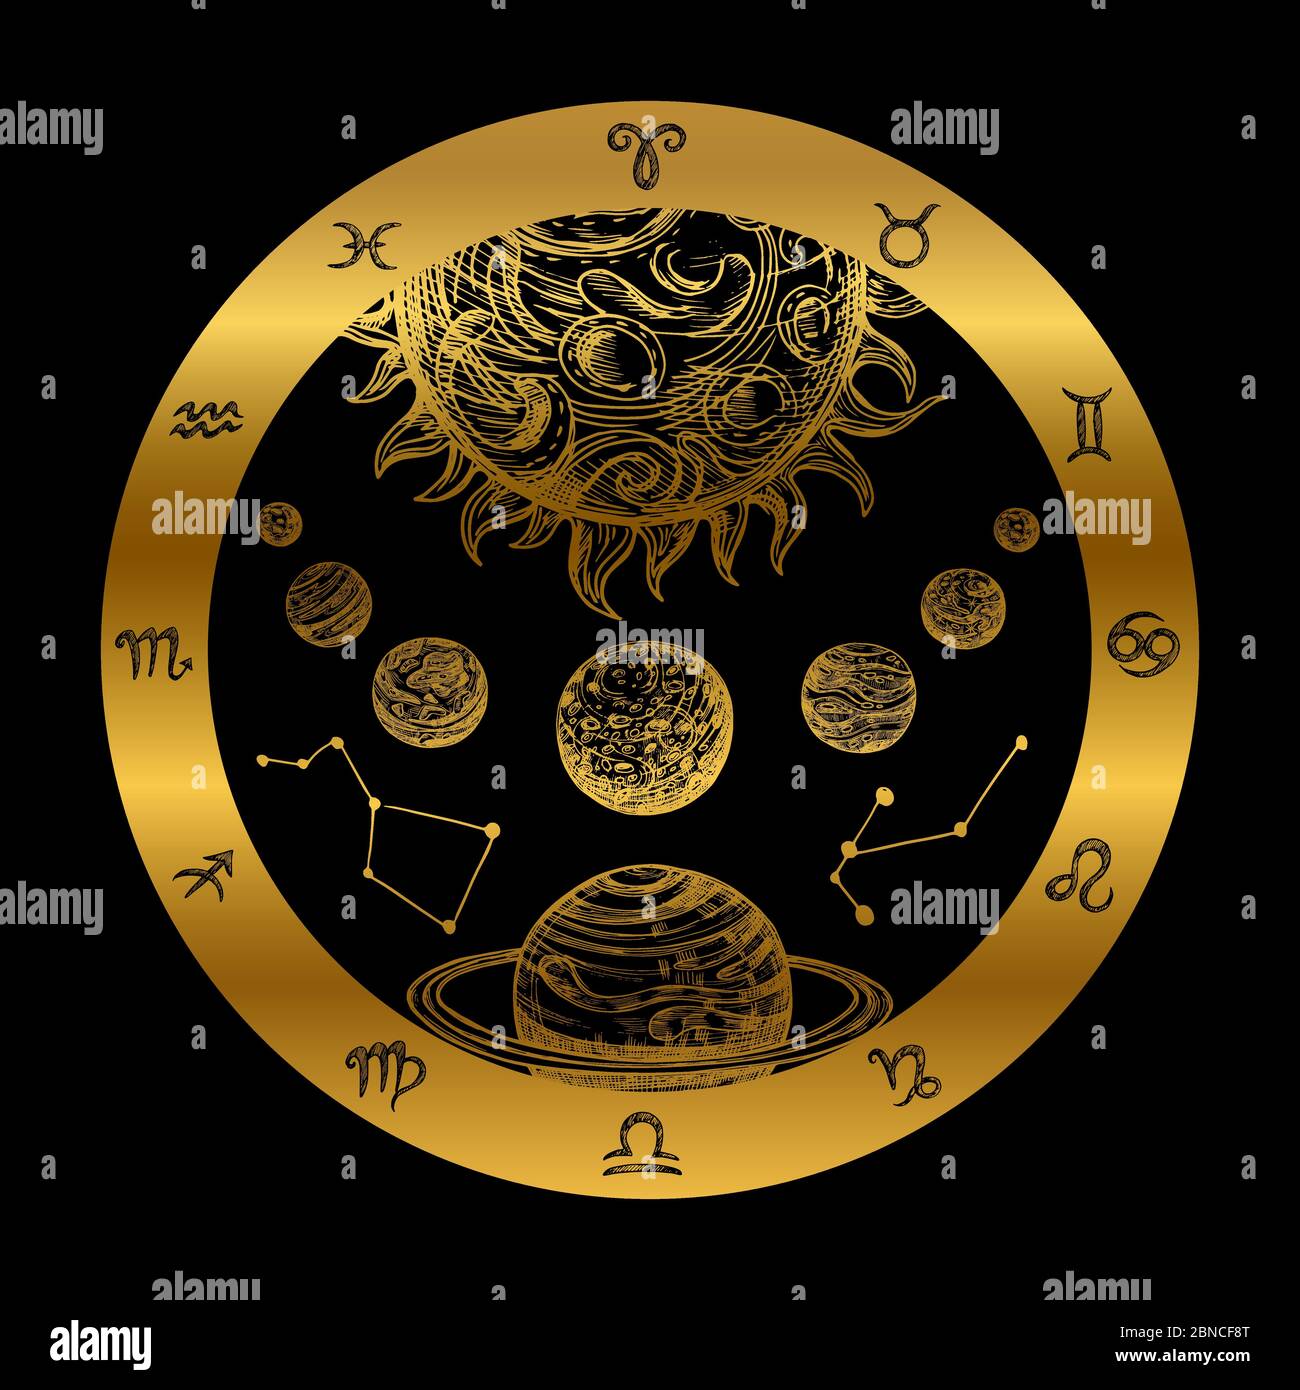 Goldenes Astrologiekonzept mit Planeten auf schwarzem Hintergrund isoliert. Goldene Astrologie Sternzeichen-Ikone, Planetarisches Horoskop mit Sternbild-Illustration Stock Vektor